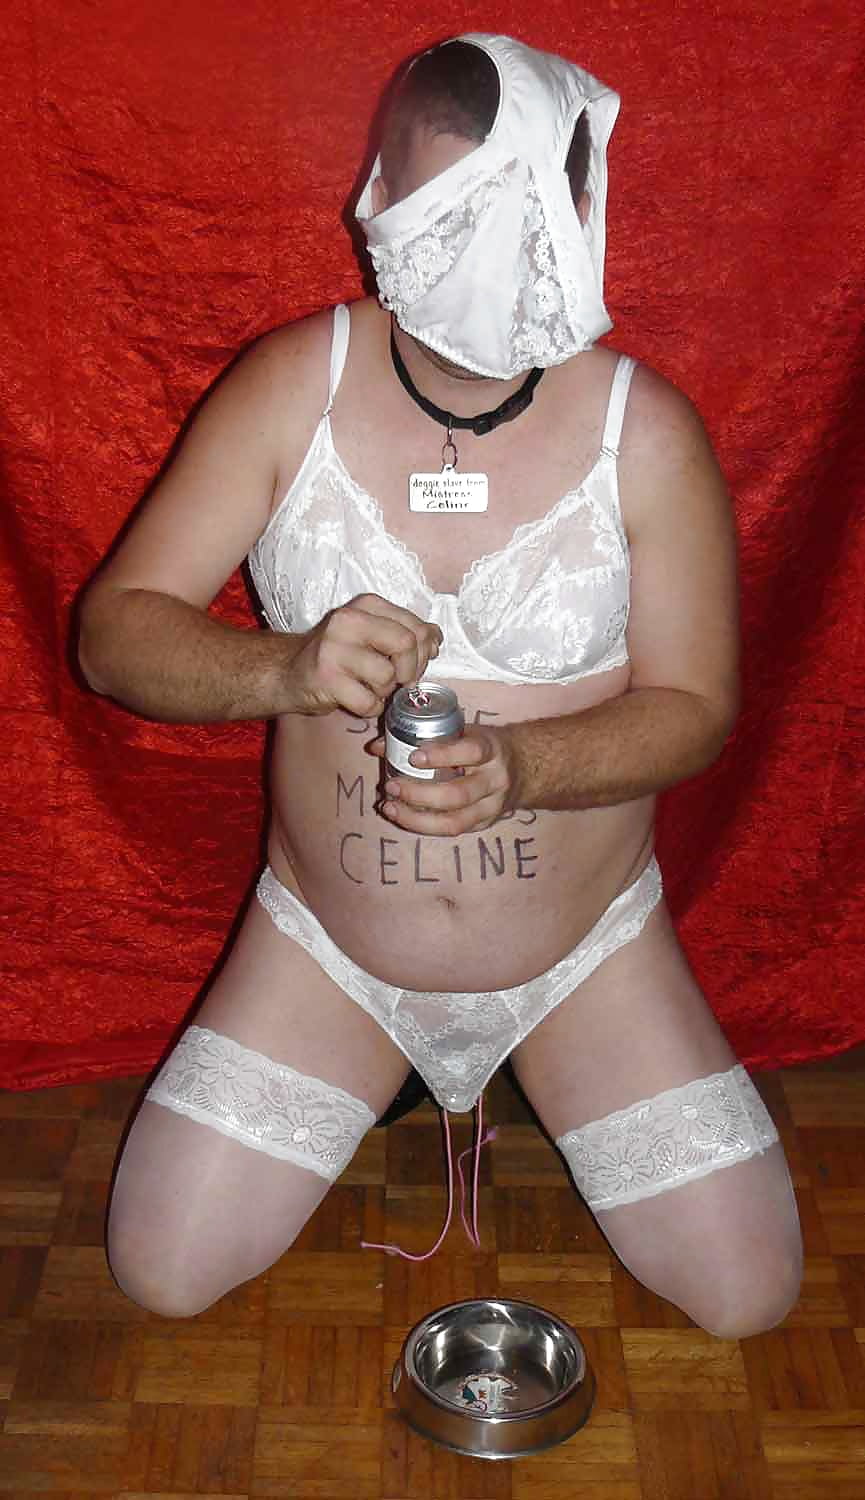 drink coke from bowl, Mistress Celine #107327977